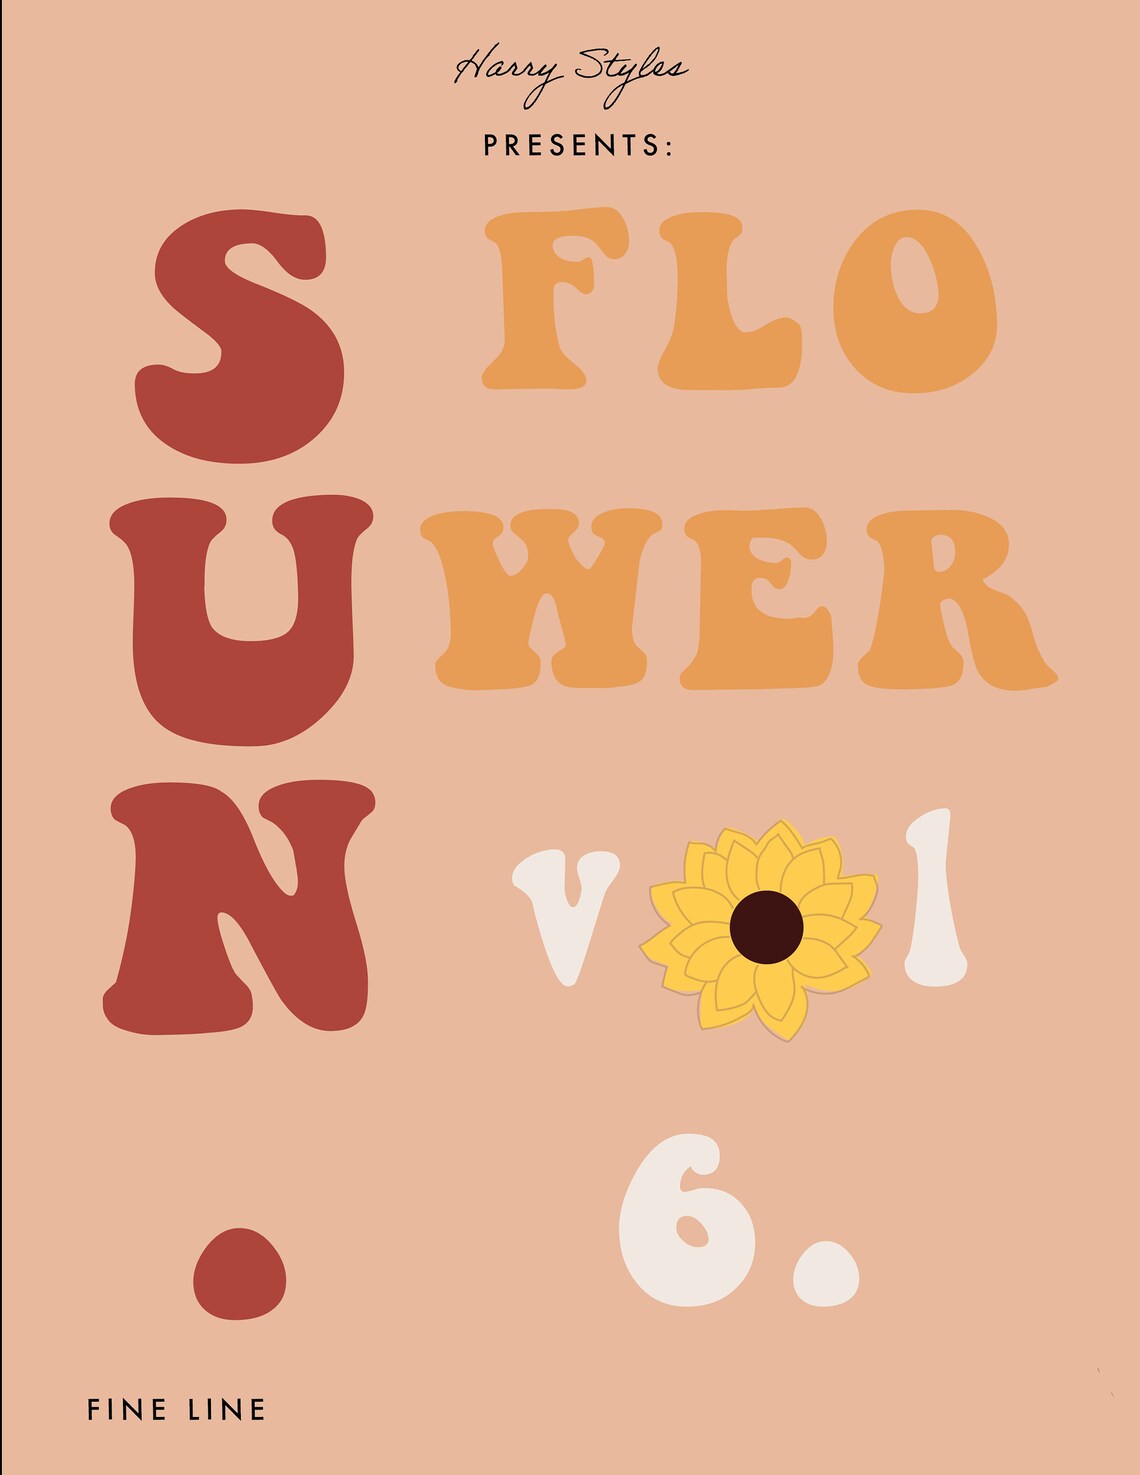 Harry Styles Sunflower Volume 6. Poster | Etsy